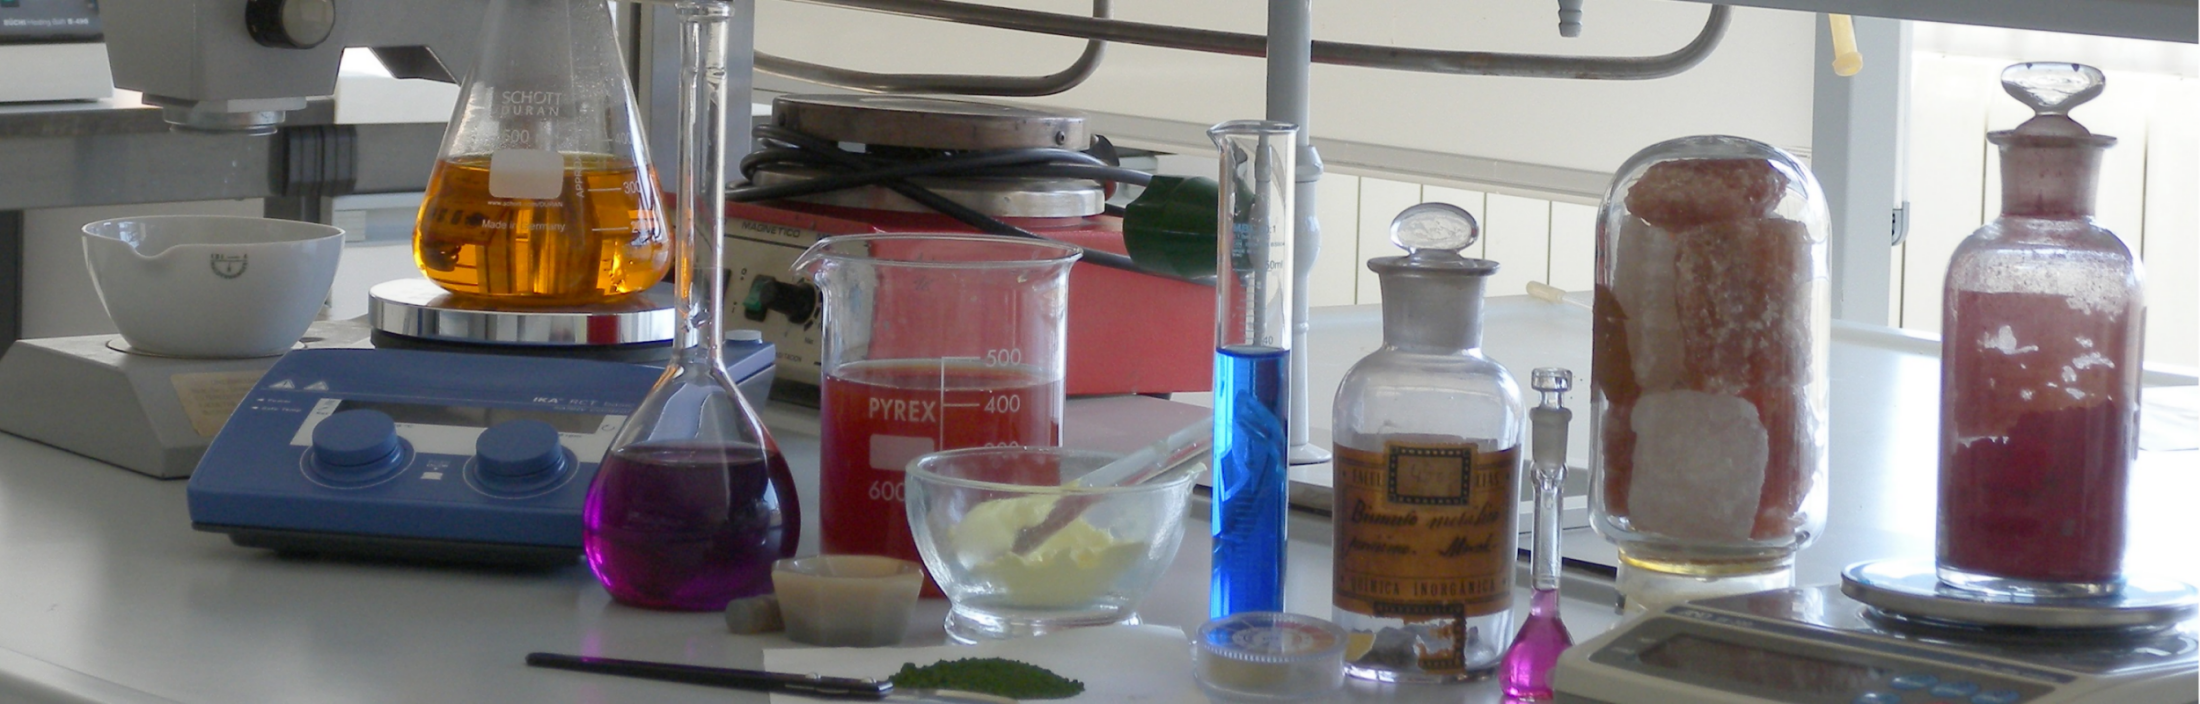 Instrumentos de laboratorio sobre una mesa